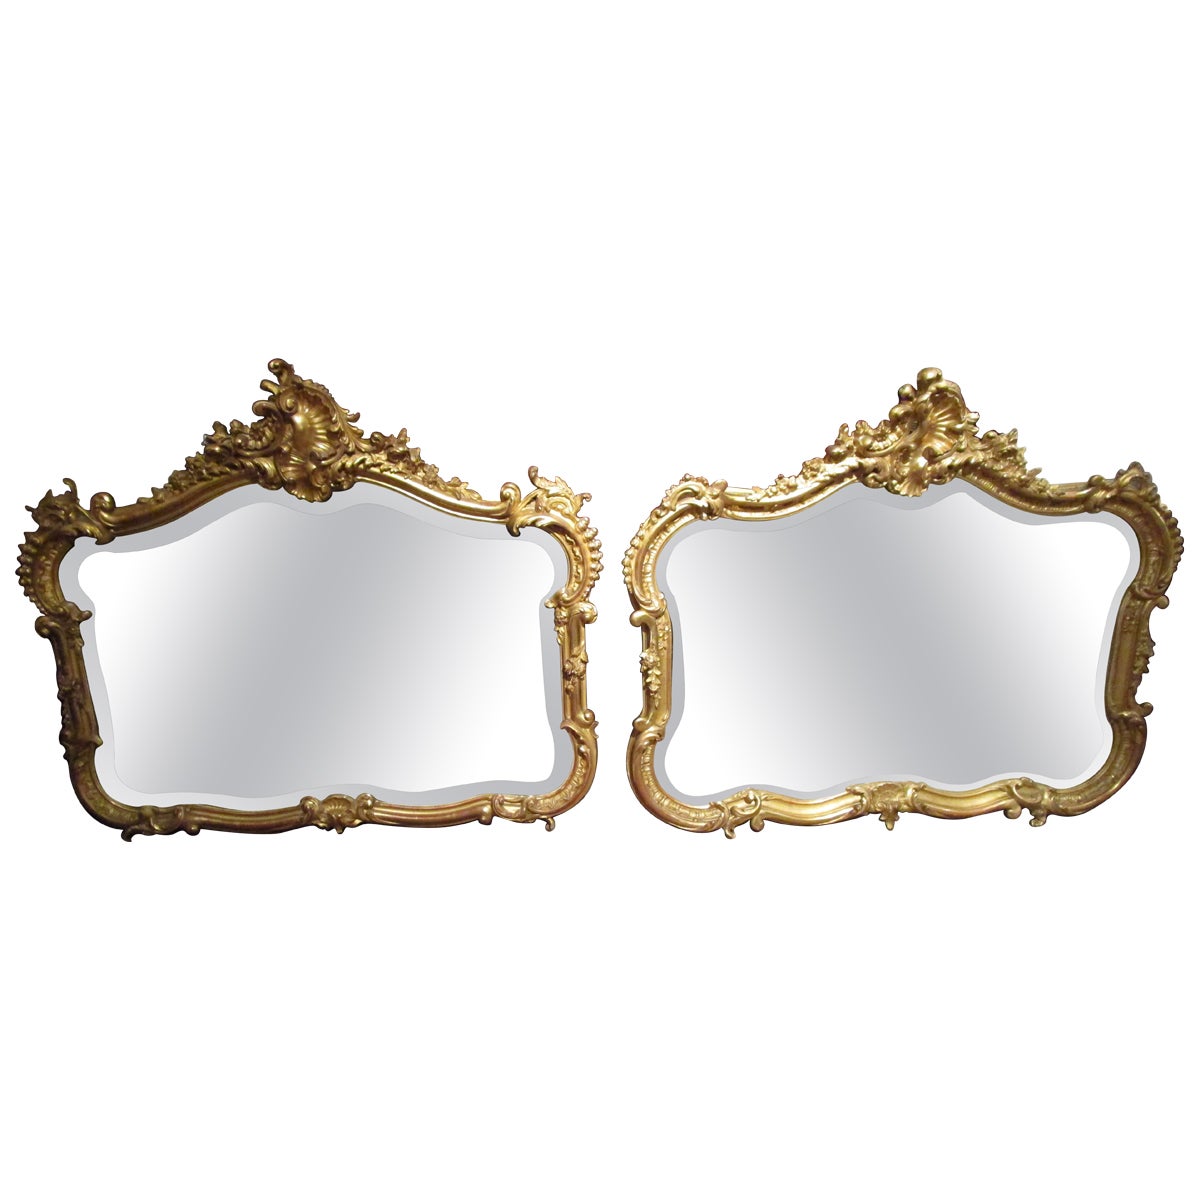 Paire de miroirs ovales sculpts et dors de style Louis XV franais